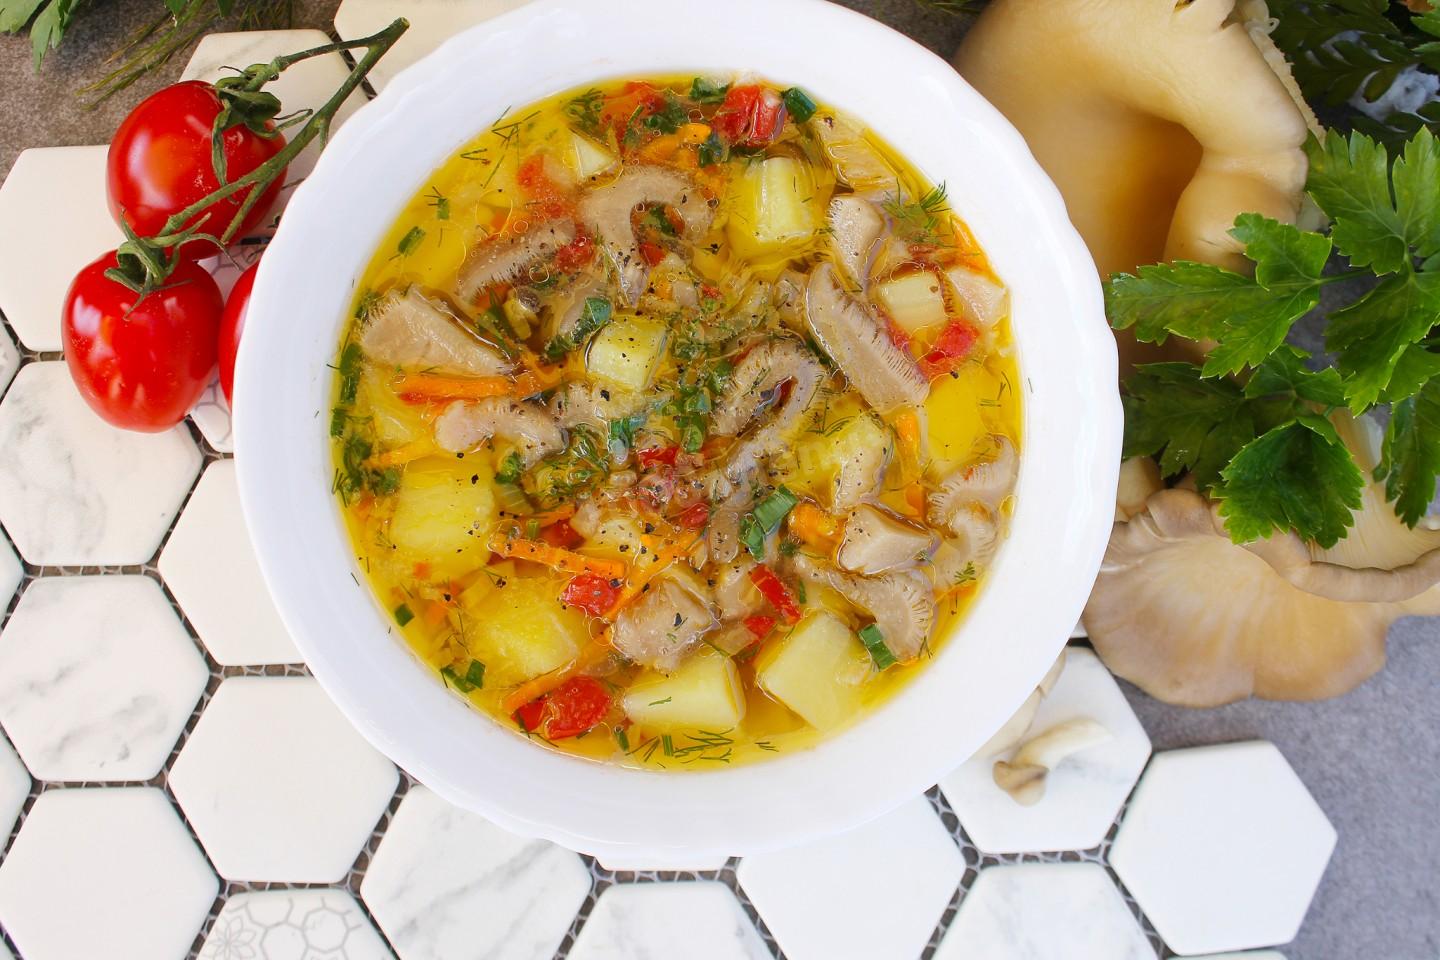 Грибной суп из вешенок рецепт с фото пошагово